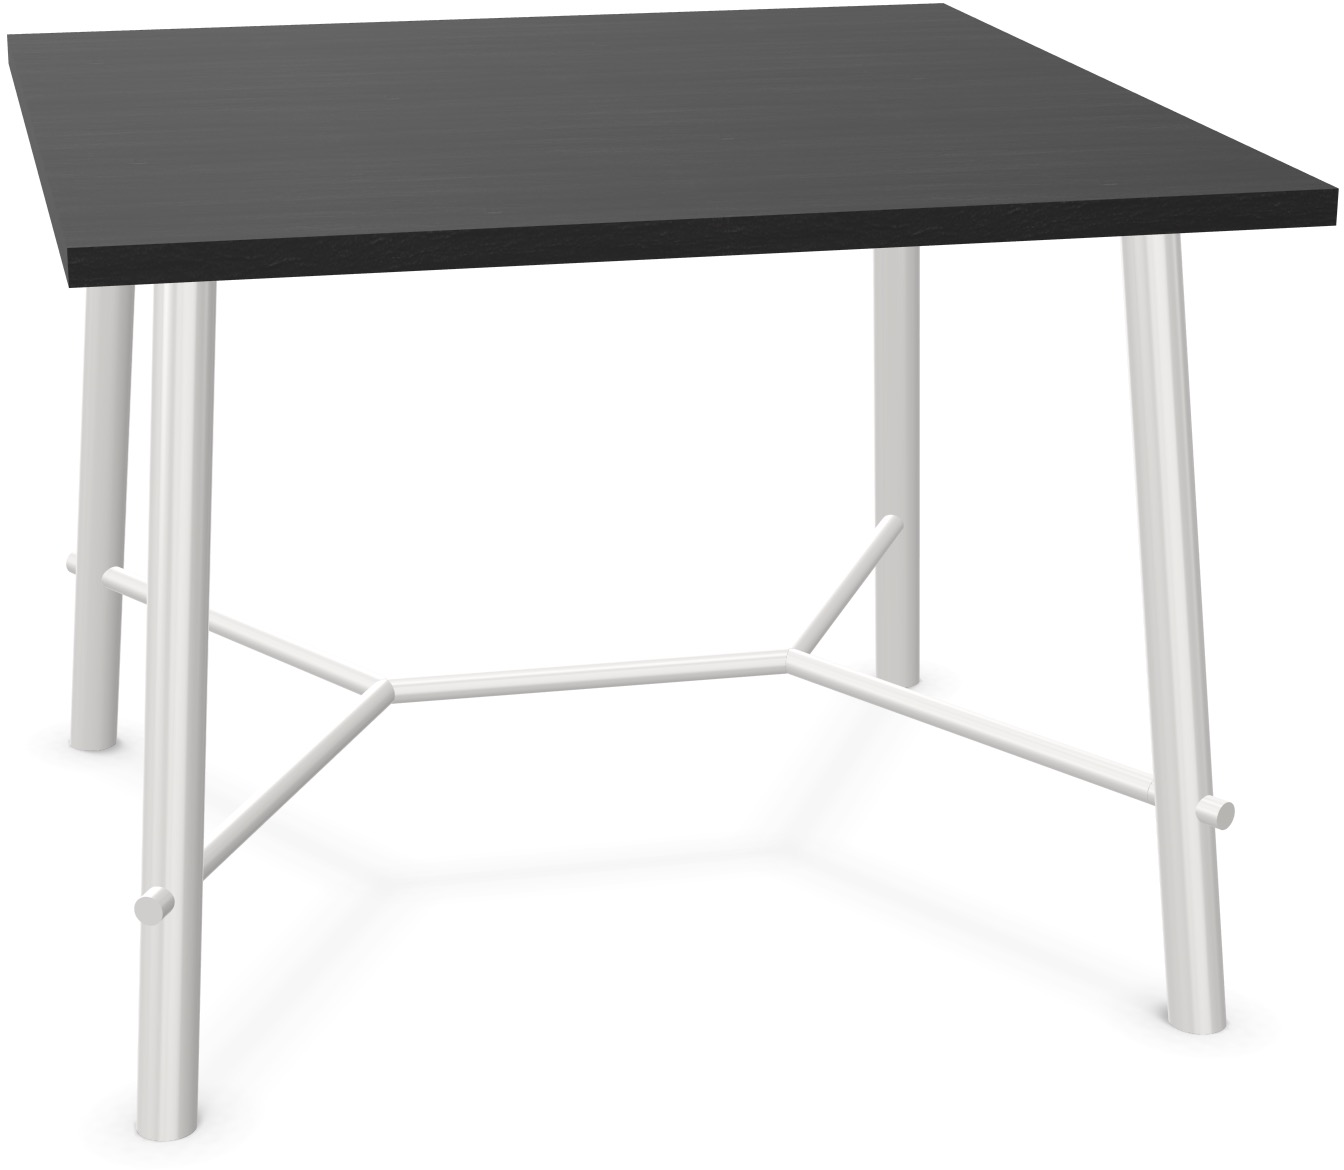 Record Living Tisch square in Eiche schwarz / Weiss präsentiert im Onlineshop von KAQTU Design AG. Esstisch ist von Infiniti Design